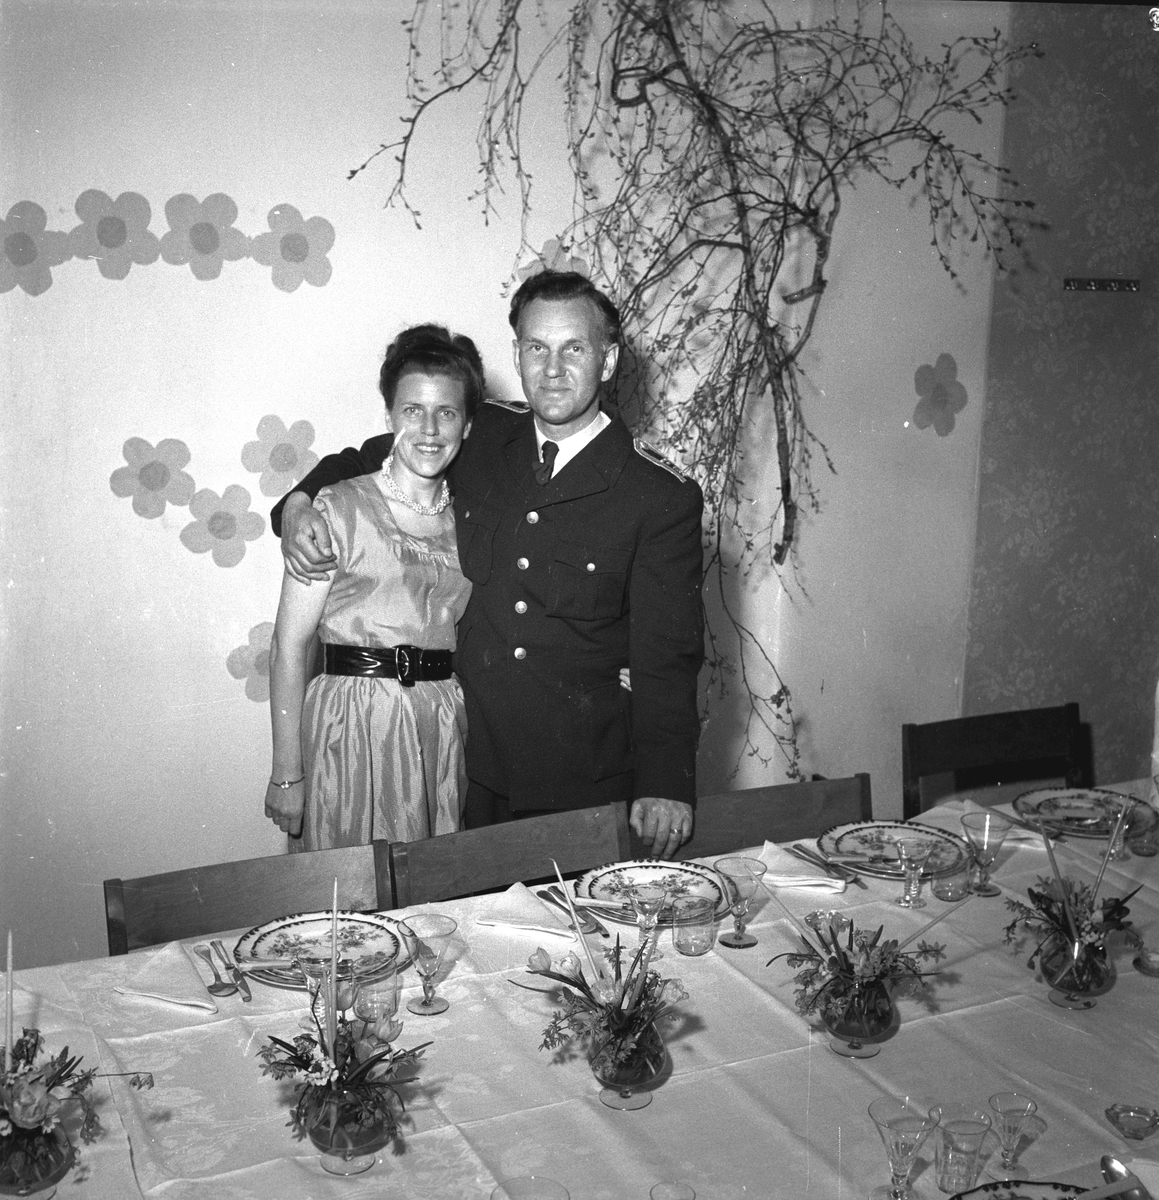 Brandchef Rohlén och fru Rohlén. Reportage för Damernas Värld, dukat bord. 30 april 1949.